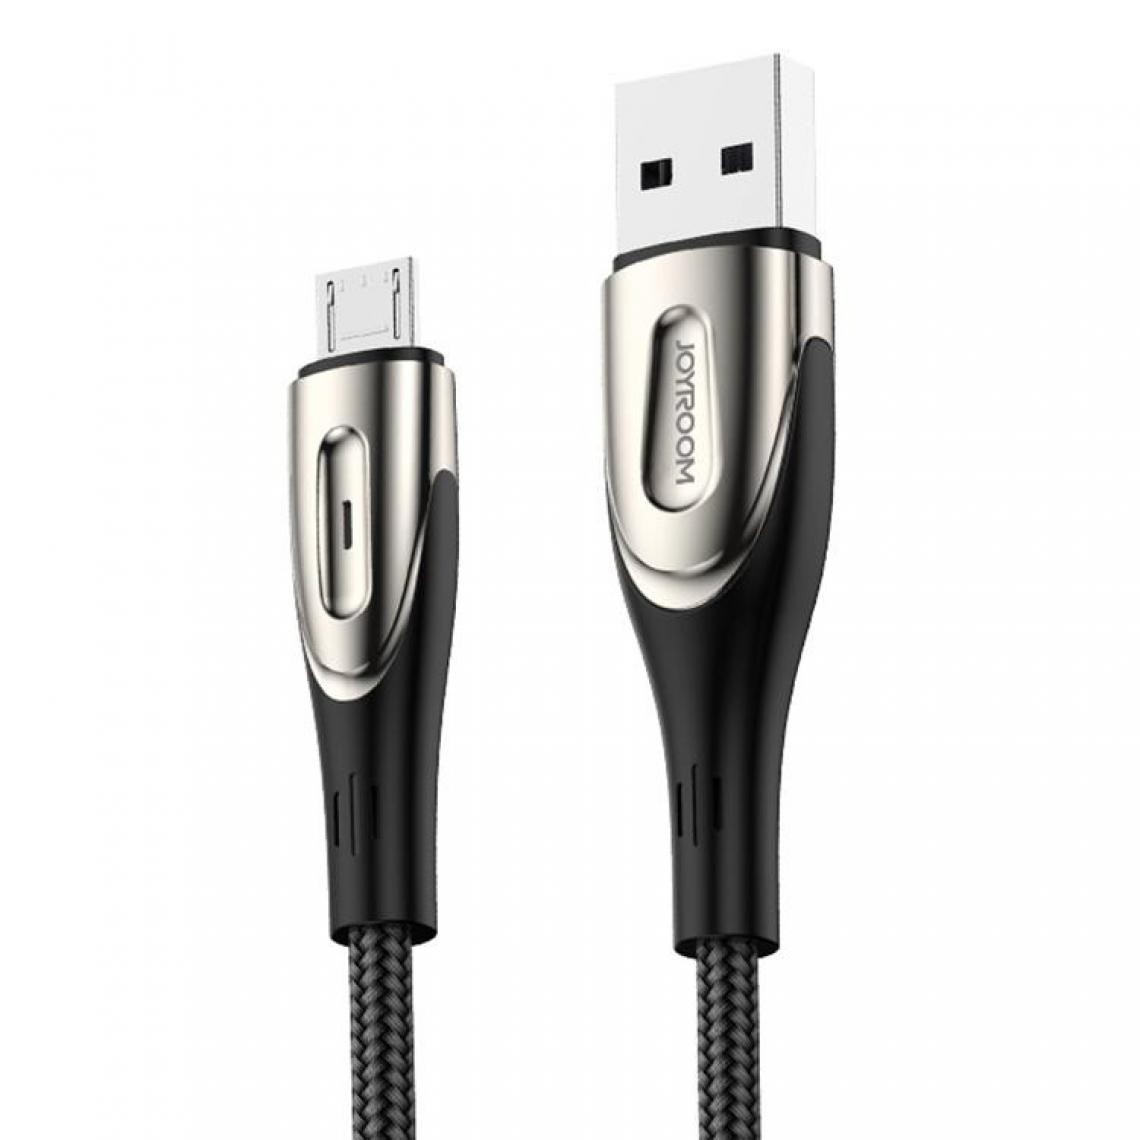 Wewoo - Câble USB S-M411 Série Sharp 3A avec interface Micro USB de charge + câble de transmission de données tressé en nylon témoin forme de gouttelongueur de câble 1,2 m Noir - Chargeur secteur téléphone